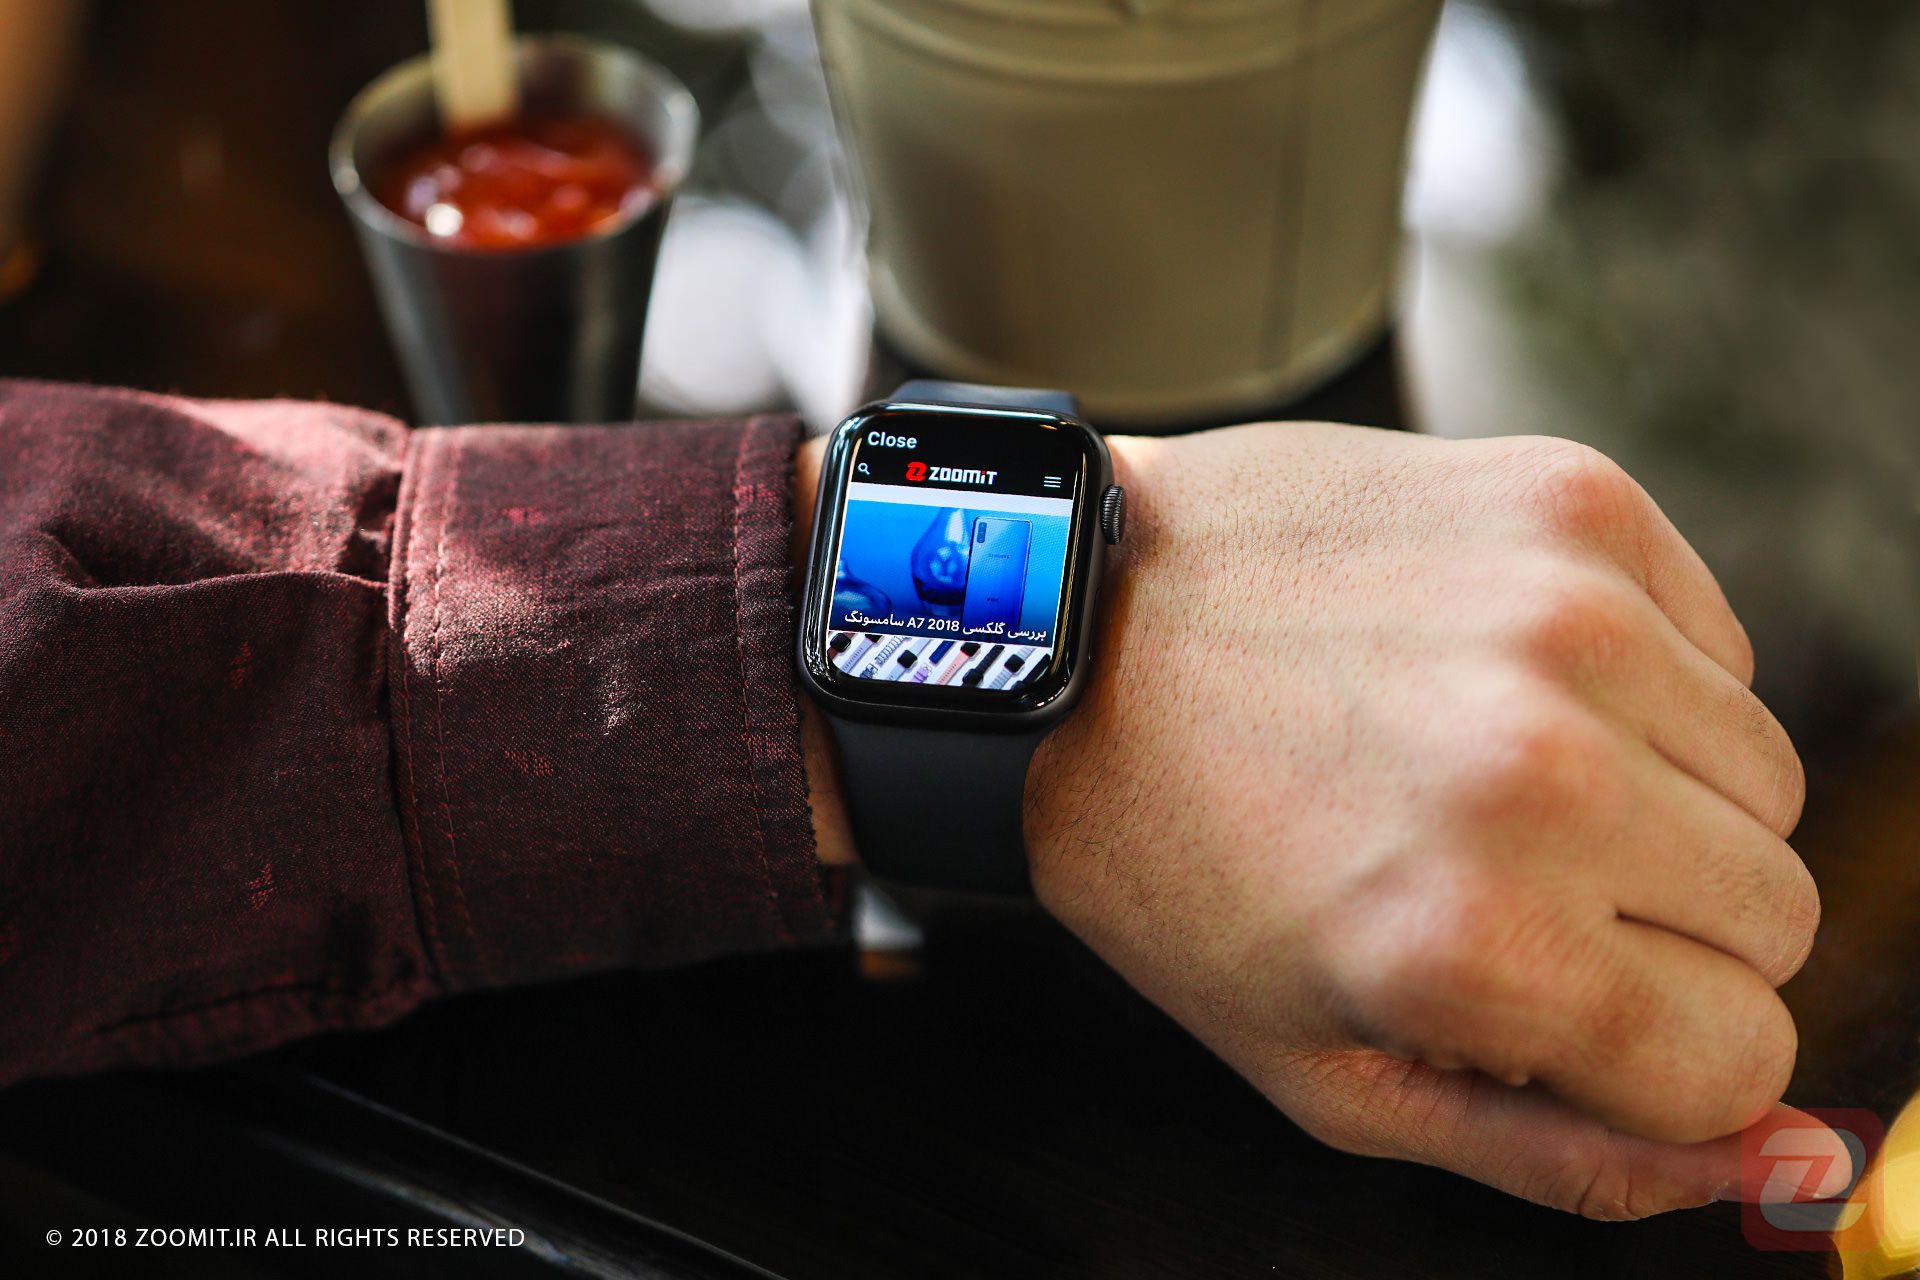 بررسی اپل واچ سری ۴ / Apple watch series 4 در دست چپ روی میز کافه درحال نمایش سایت زومیت